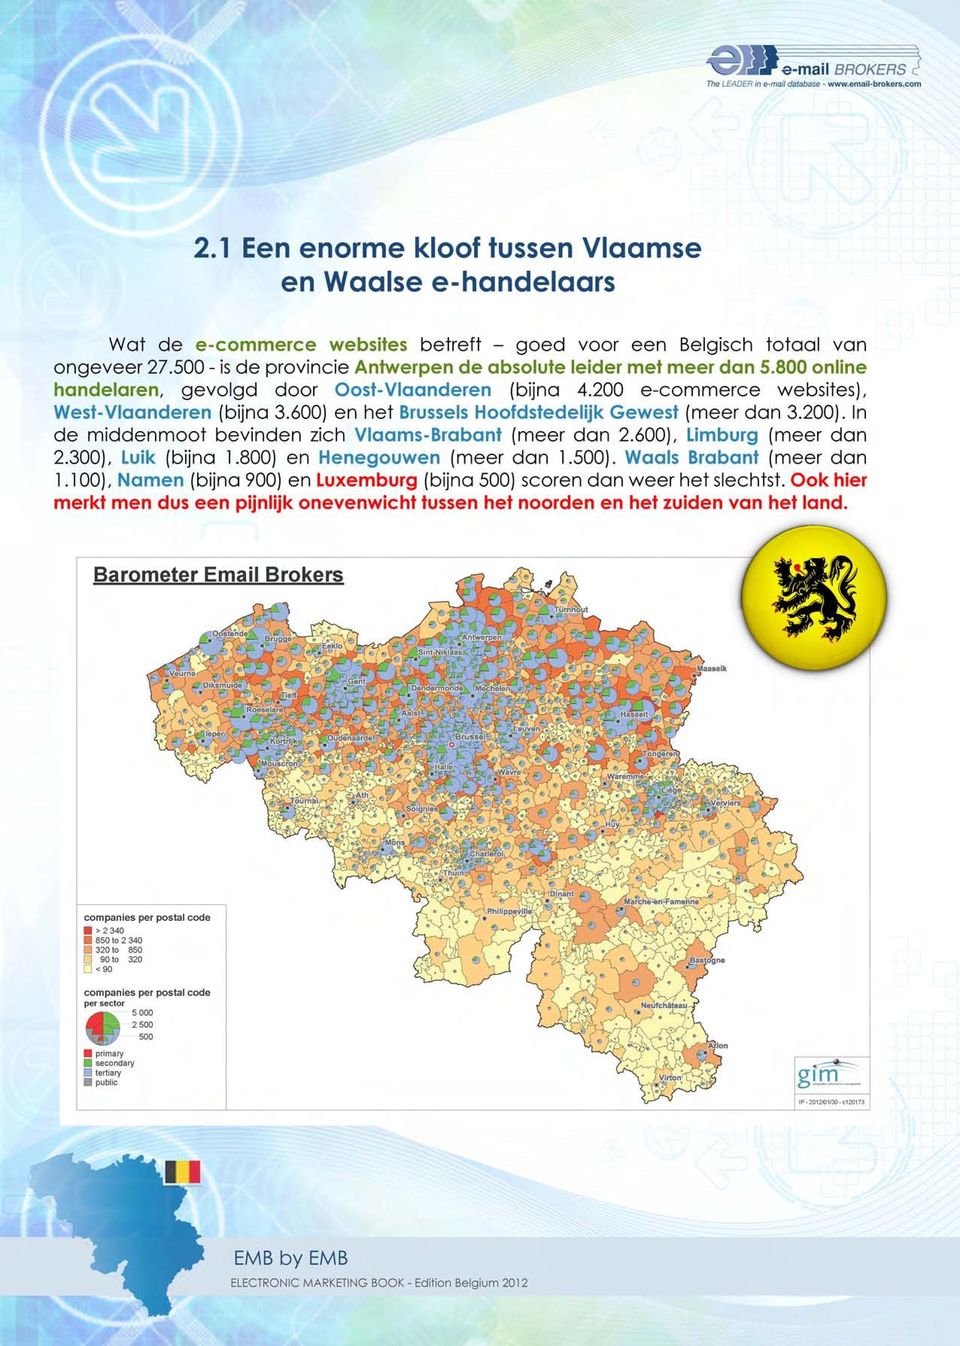 600) en het 8russels Hoofdstedelijk Gewest (meer dan 3.200). In de middenmoot bevinden zich Vlaams-Brabant (meer dan 2.600), Limburg (meer dan 2.300), Luik (bijna 1.800) en Henegouwen (meer dan 1.